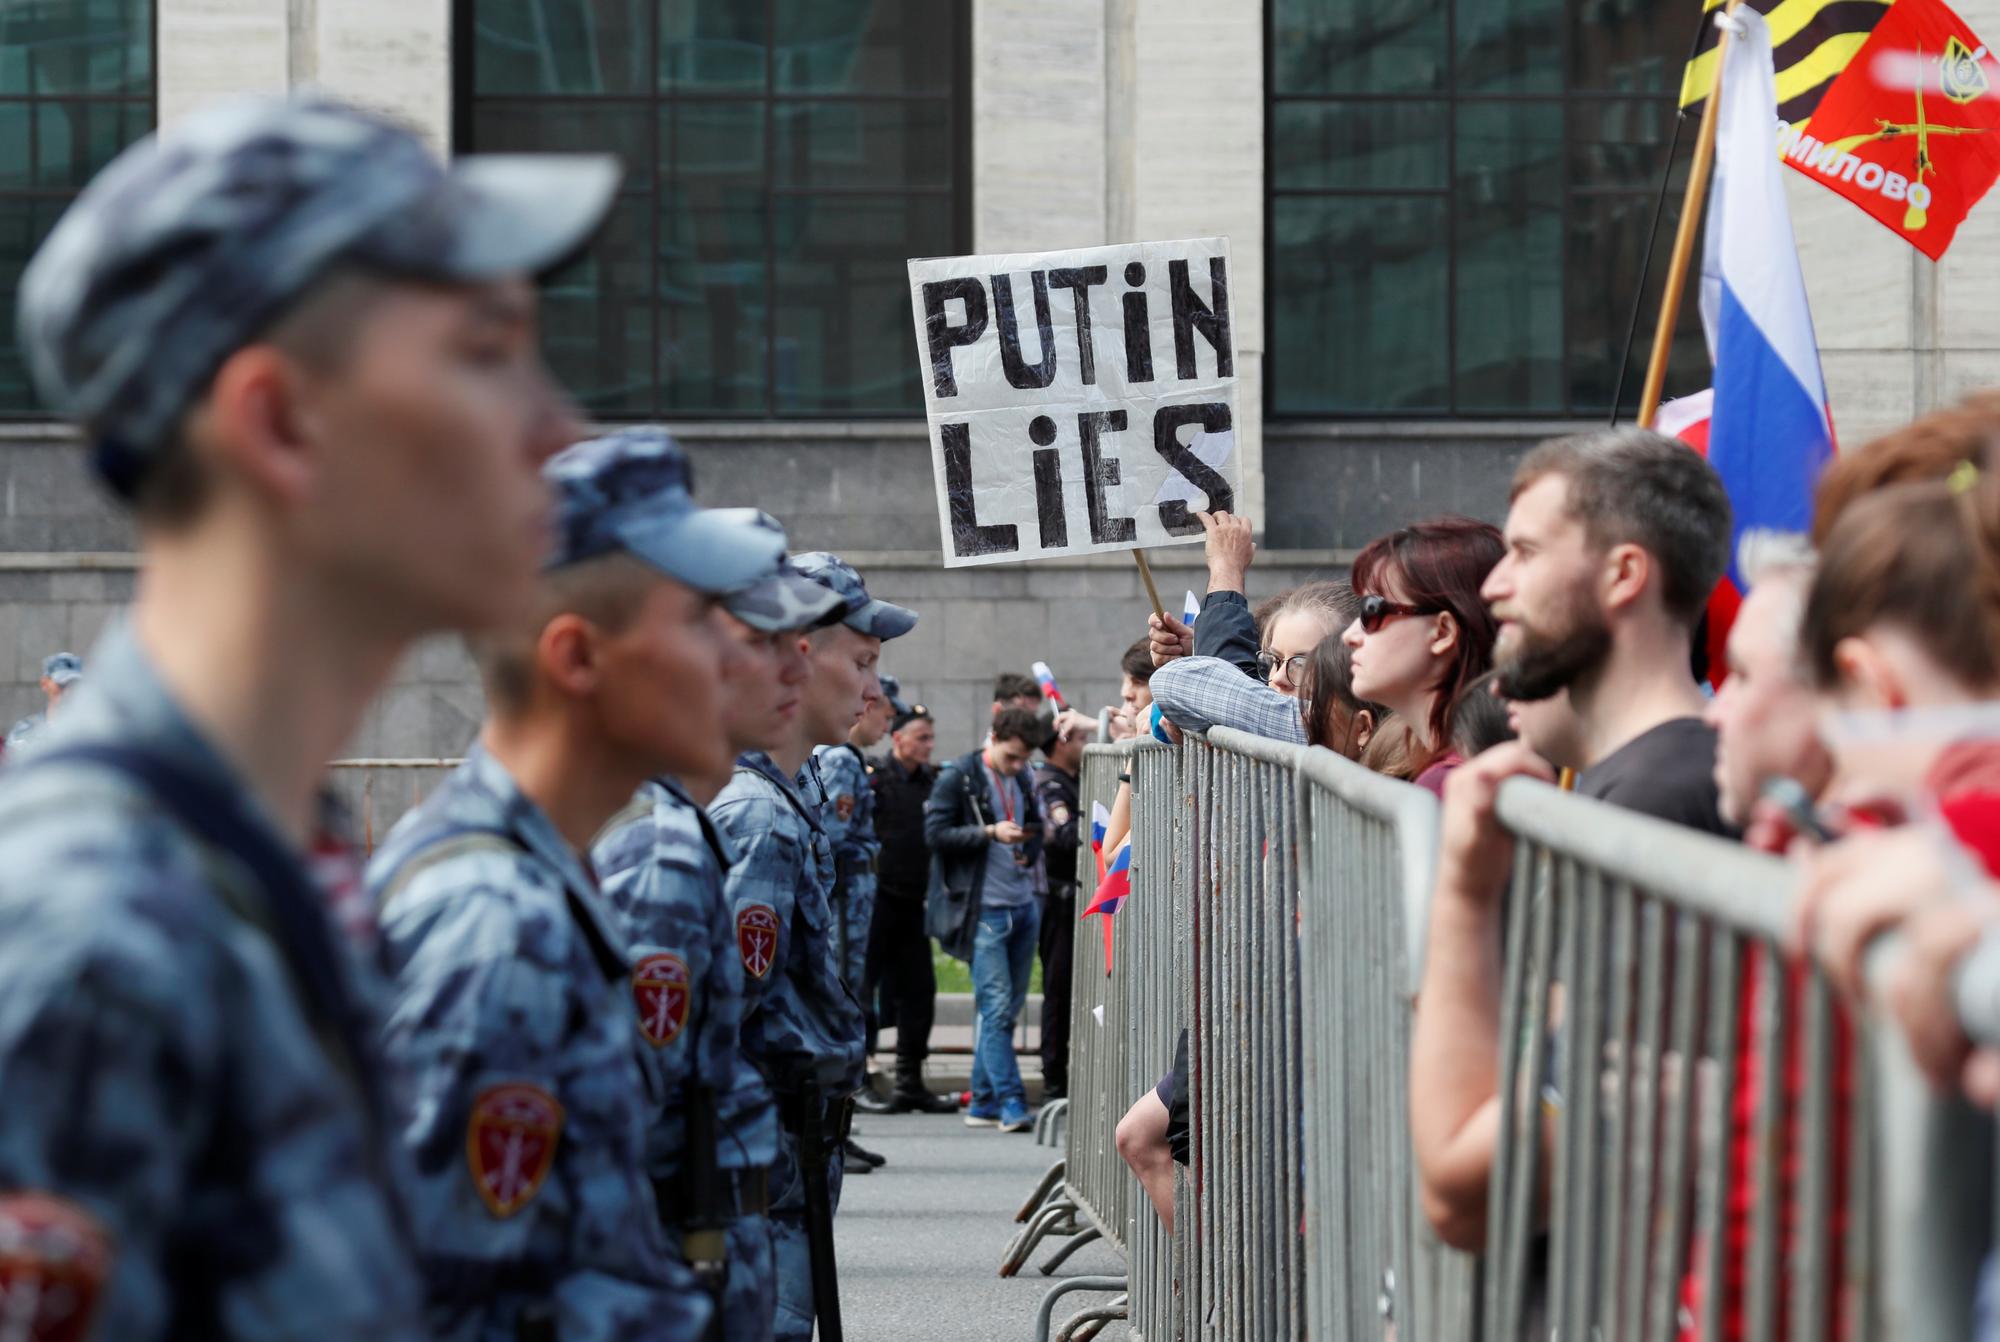 "Poutine ment", affirme cette pancarte durant la manifestation moscovite du 20 juillet 2019. [Reuters - Shamil Zhumatov]